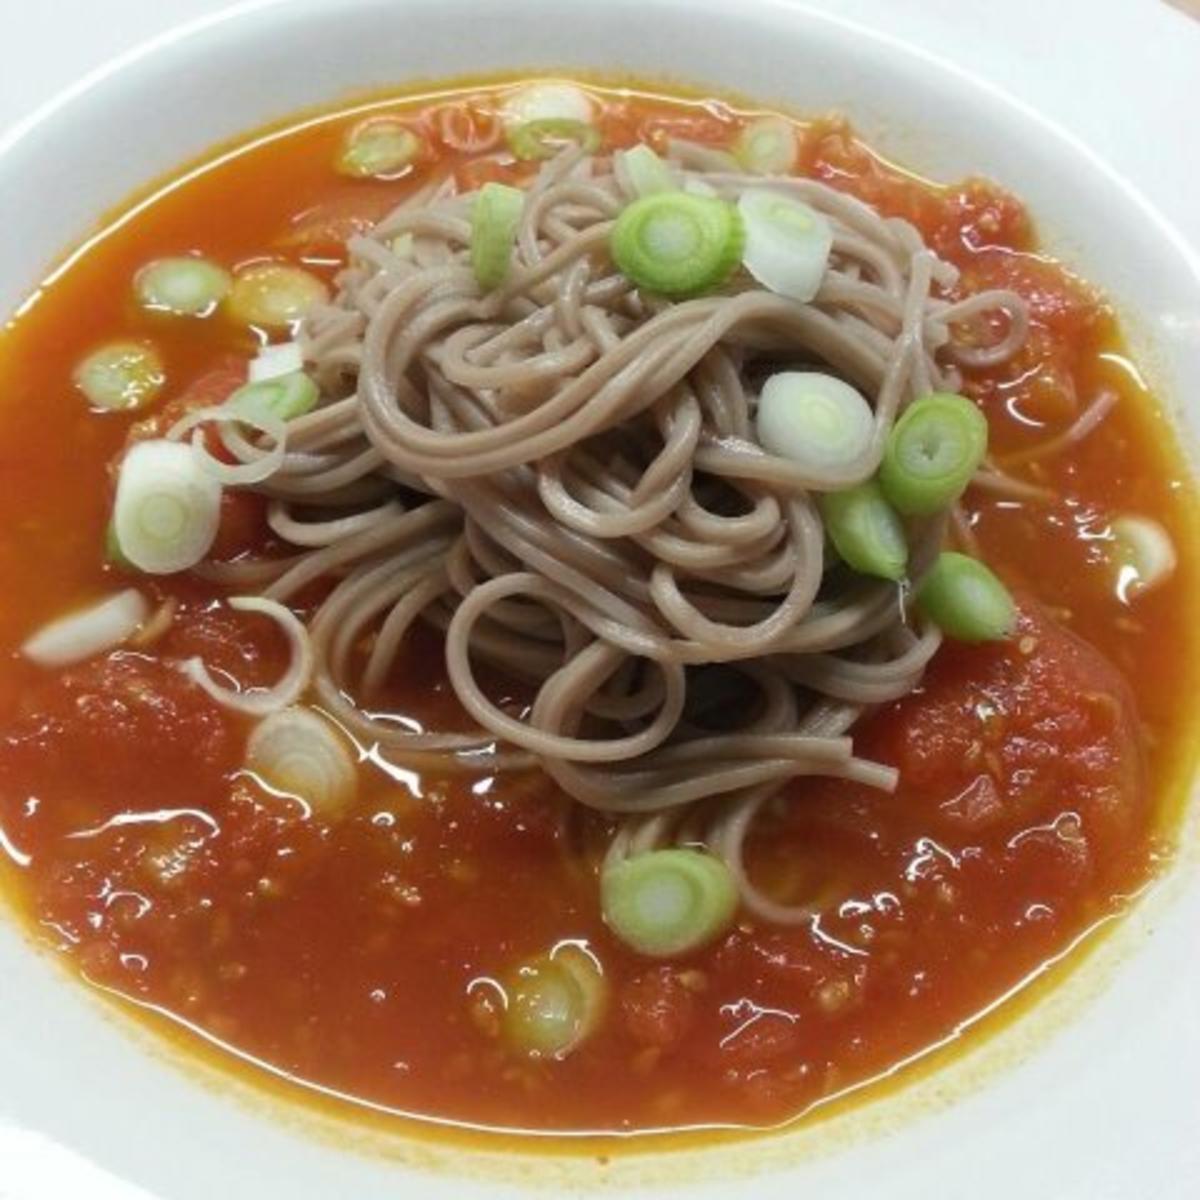 Asiatische Tomatensuppe mit Soba-Nudeln - Rezept